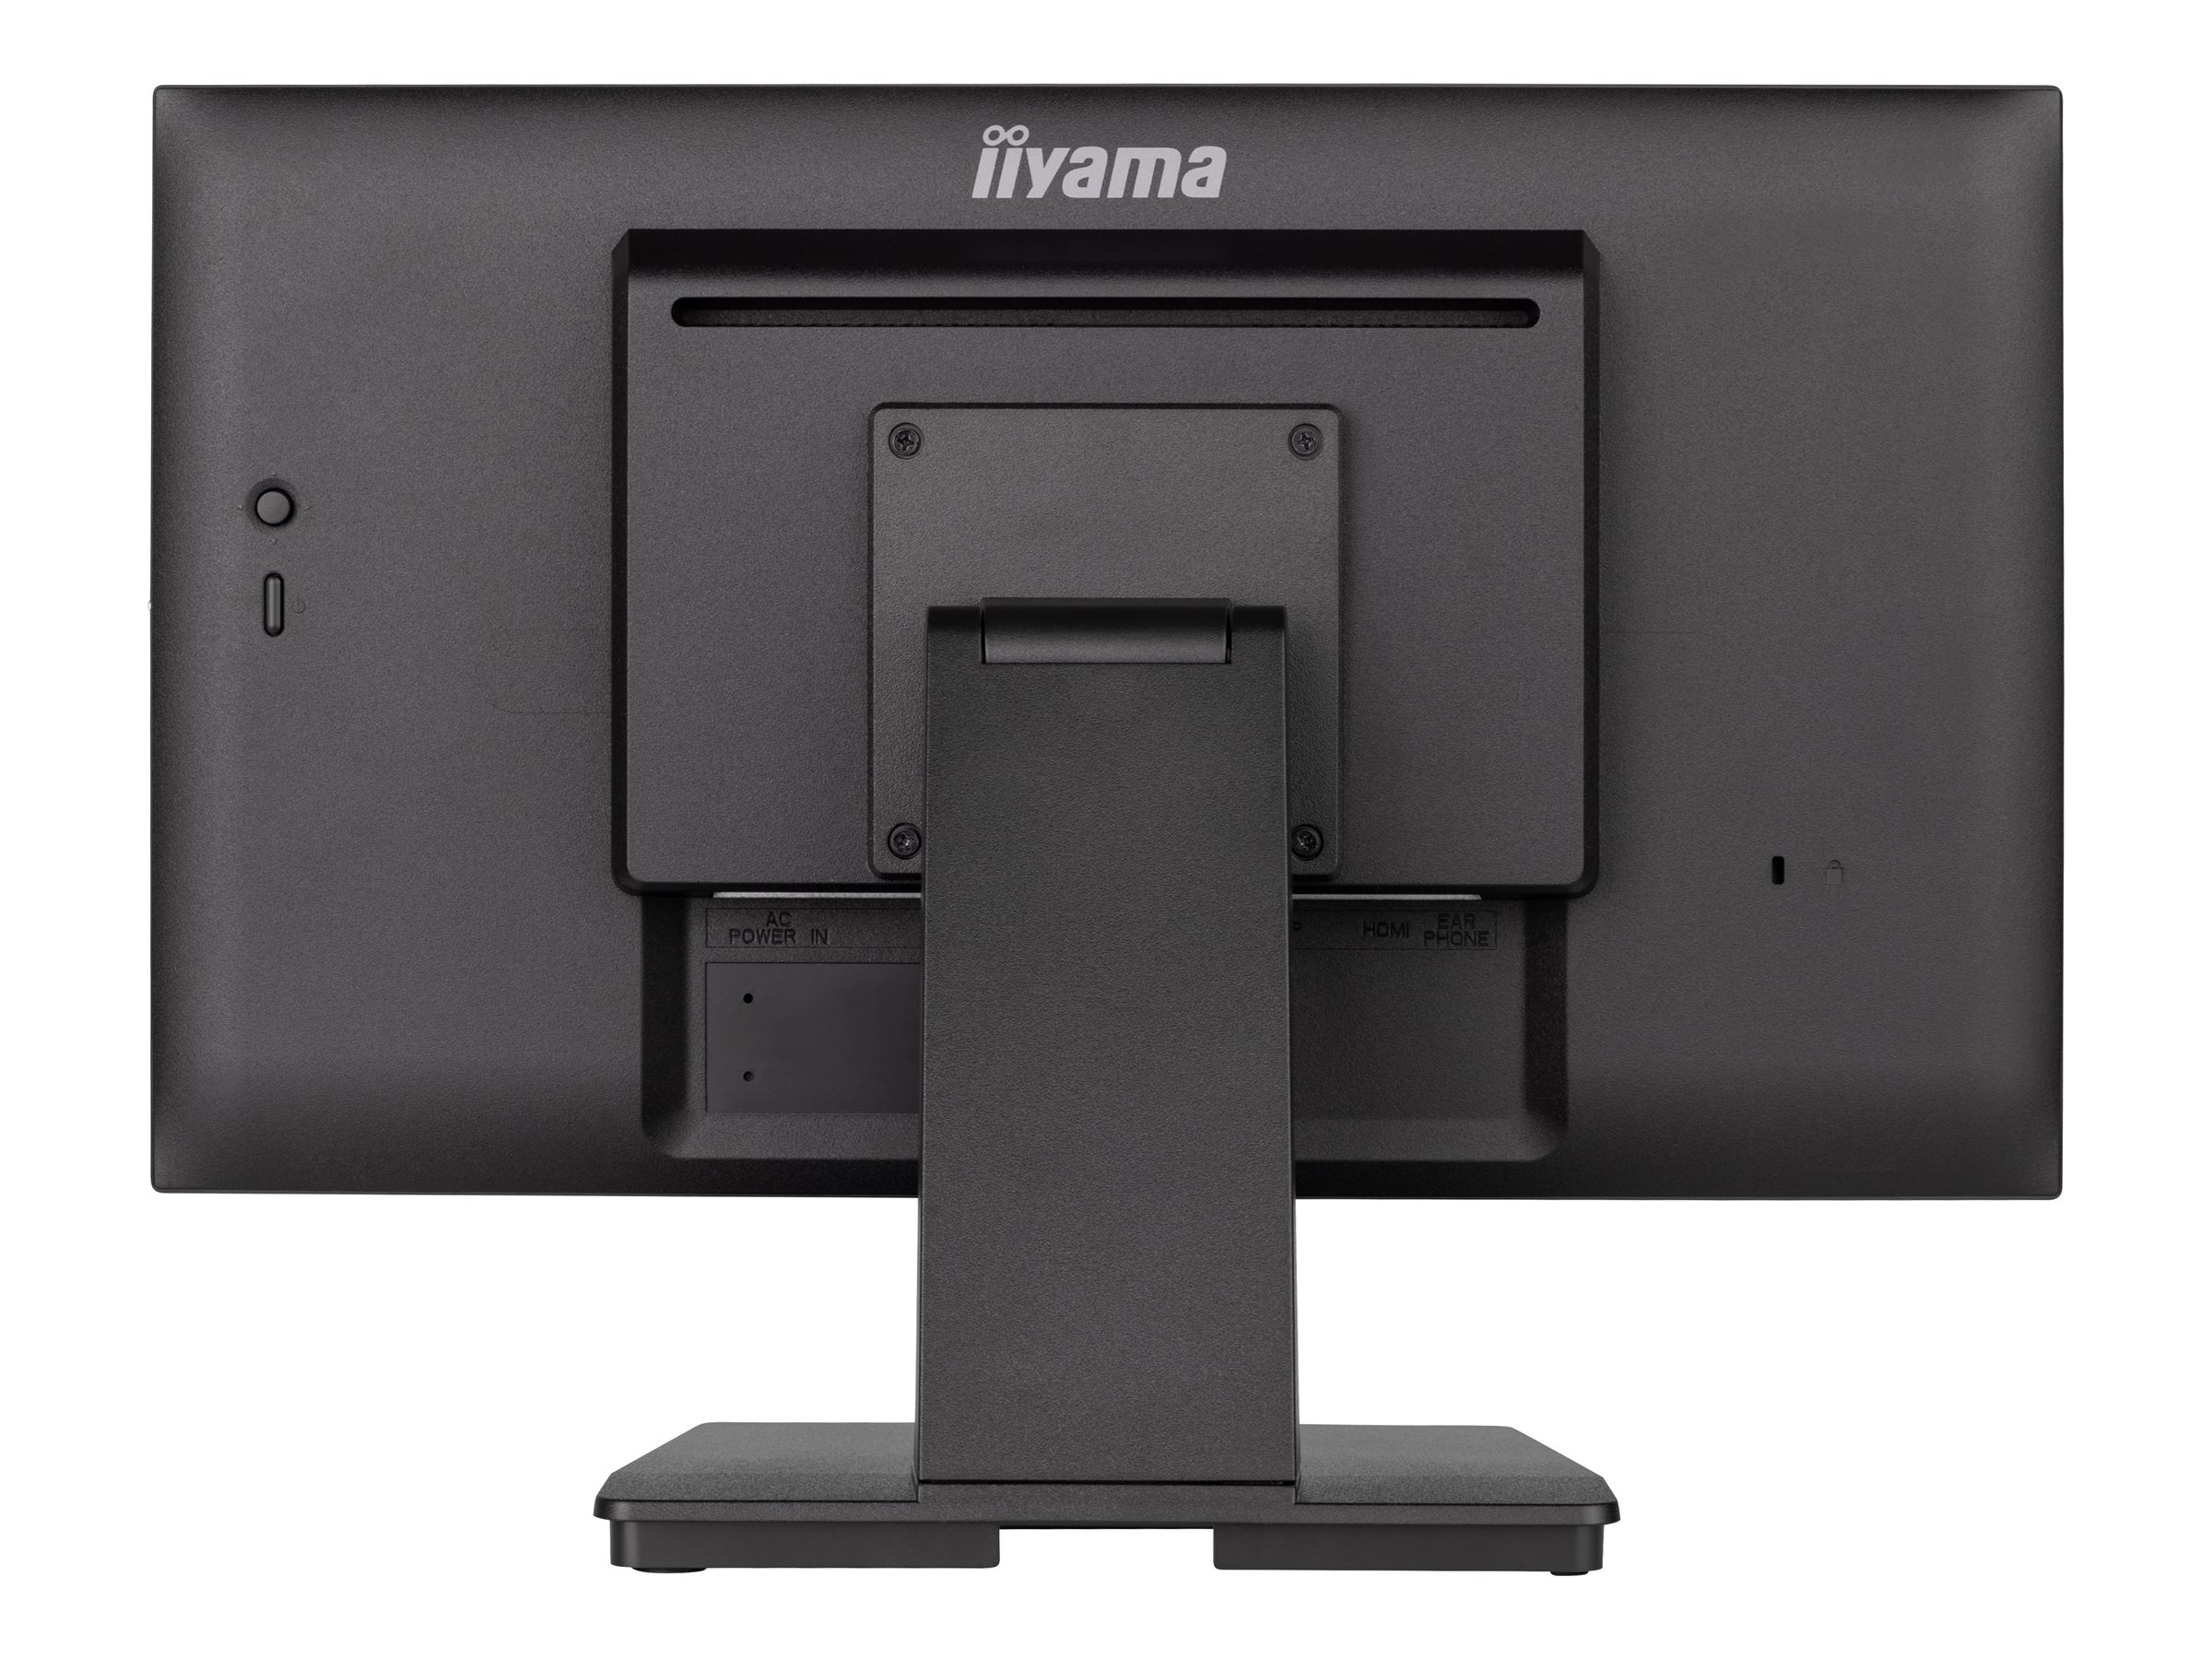 iiyama ProLite T2252MSC-B2 - Écran LED - 22" (21.5" visualisable) - écran tactile - 1920 x 1080 Full HD (1080p) @ 60 Hz - IPS - 250 cd/m² - 1000:1 - 5 ms - HDMI, DisplayPort - haut-parleurs - noir, finition matte - T2252MSC-B2 - Écrans d'ordinateur